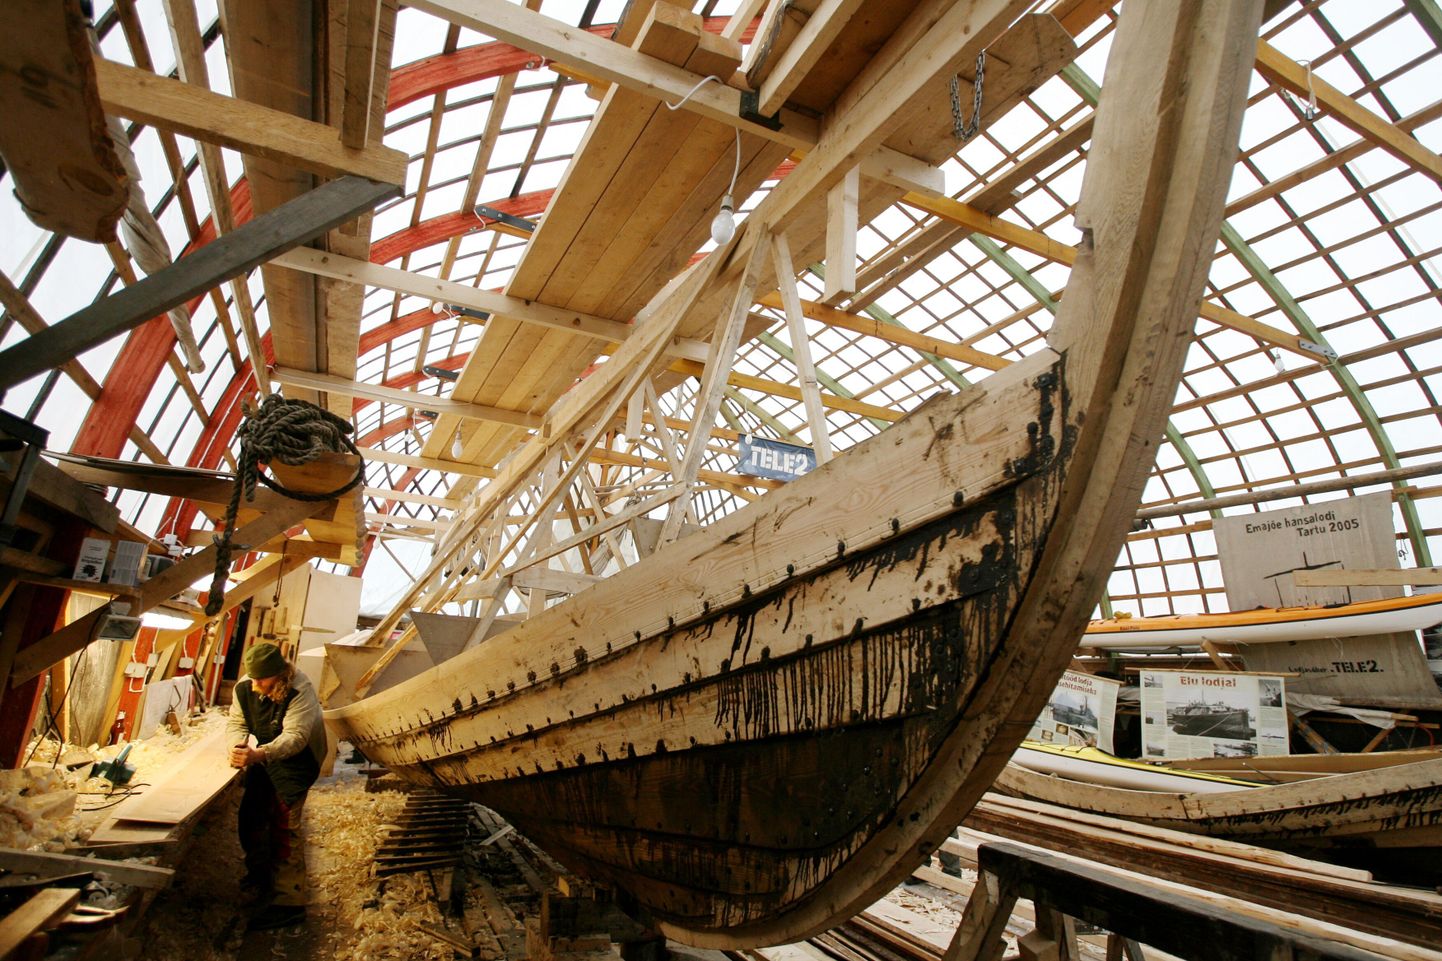 Näide viikingipaadi ehitusest MTÜ Emajõe Lodjaseltsi käe all. Foto on illustratiivne.